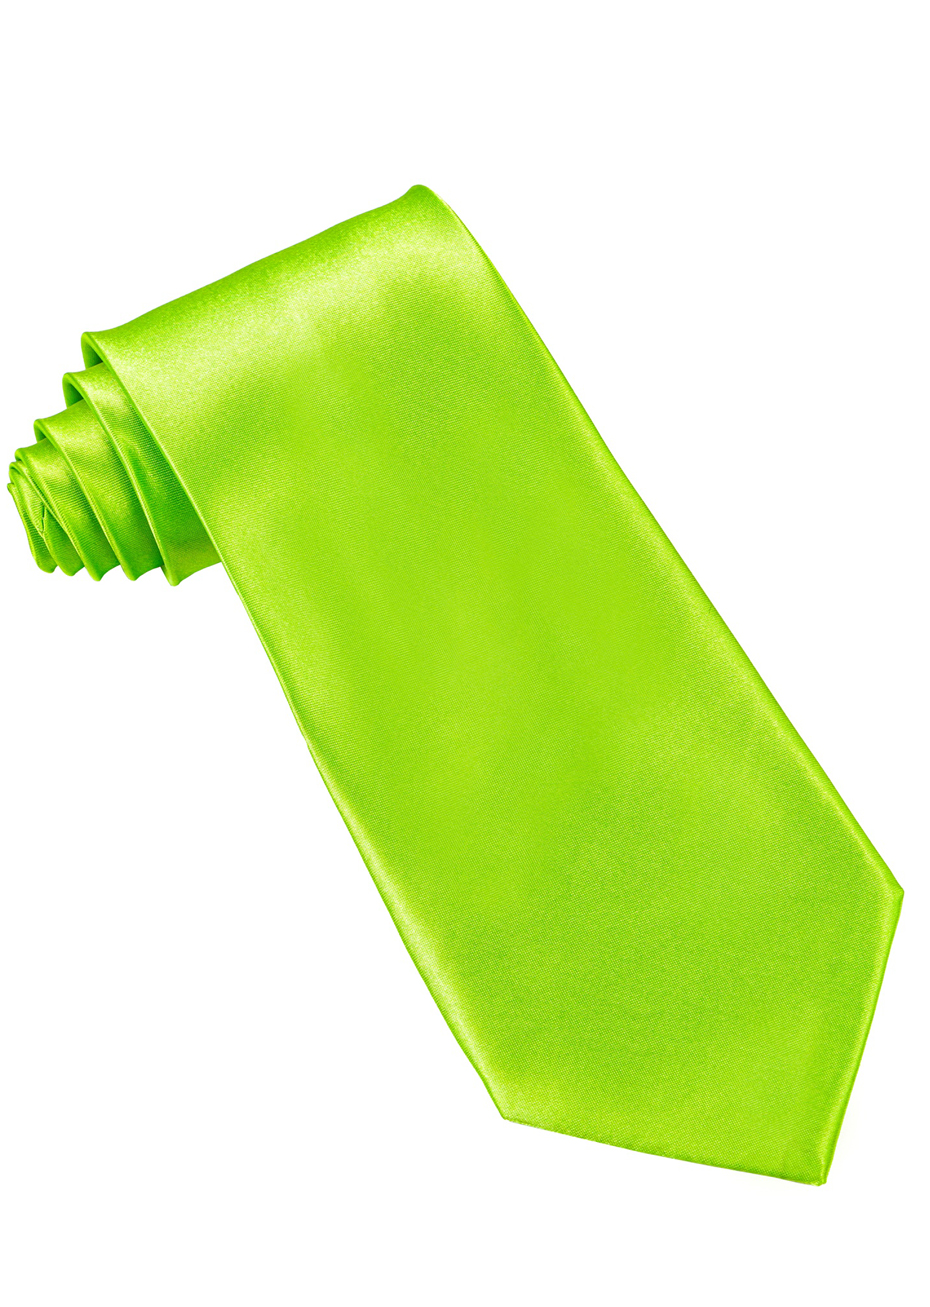 Cravate fluo verte - Aux 1001 fêtes